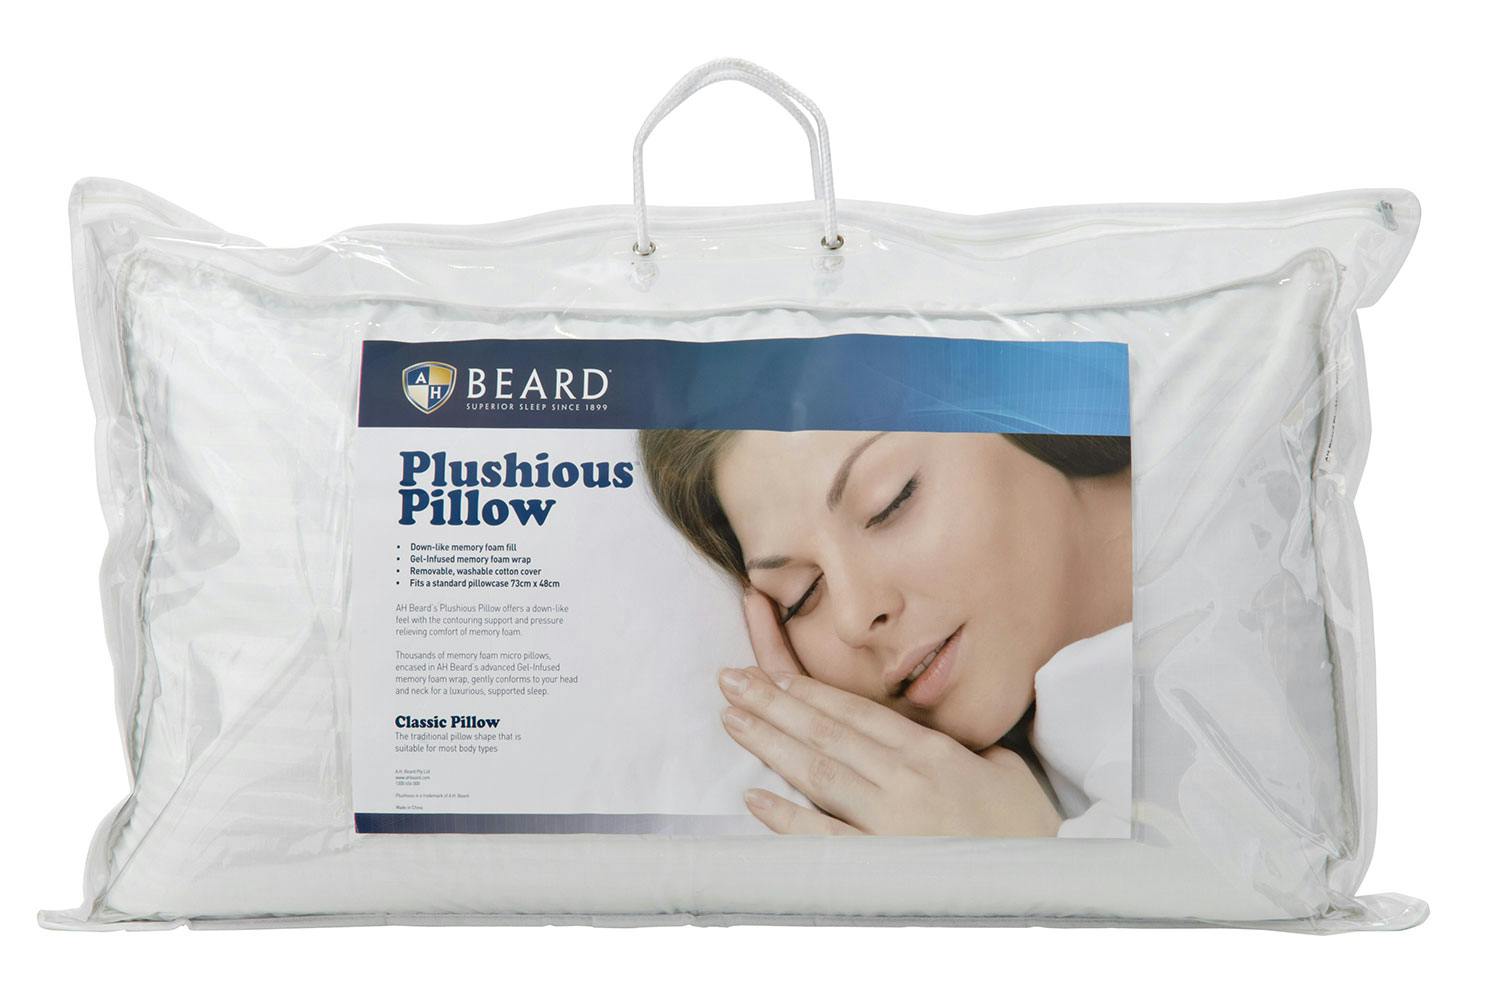 ah beard pillow top mattress